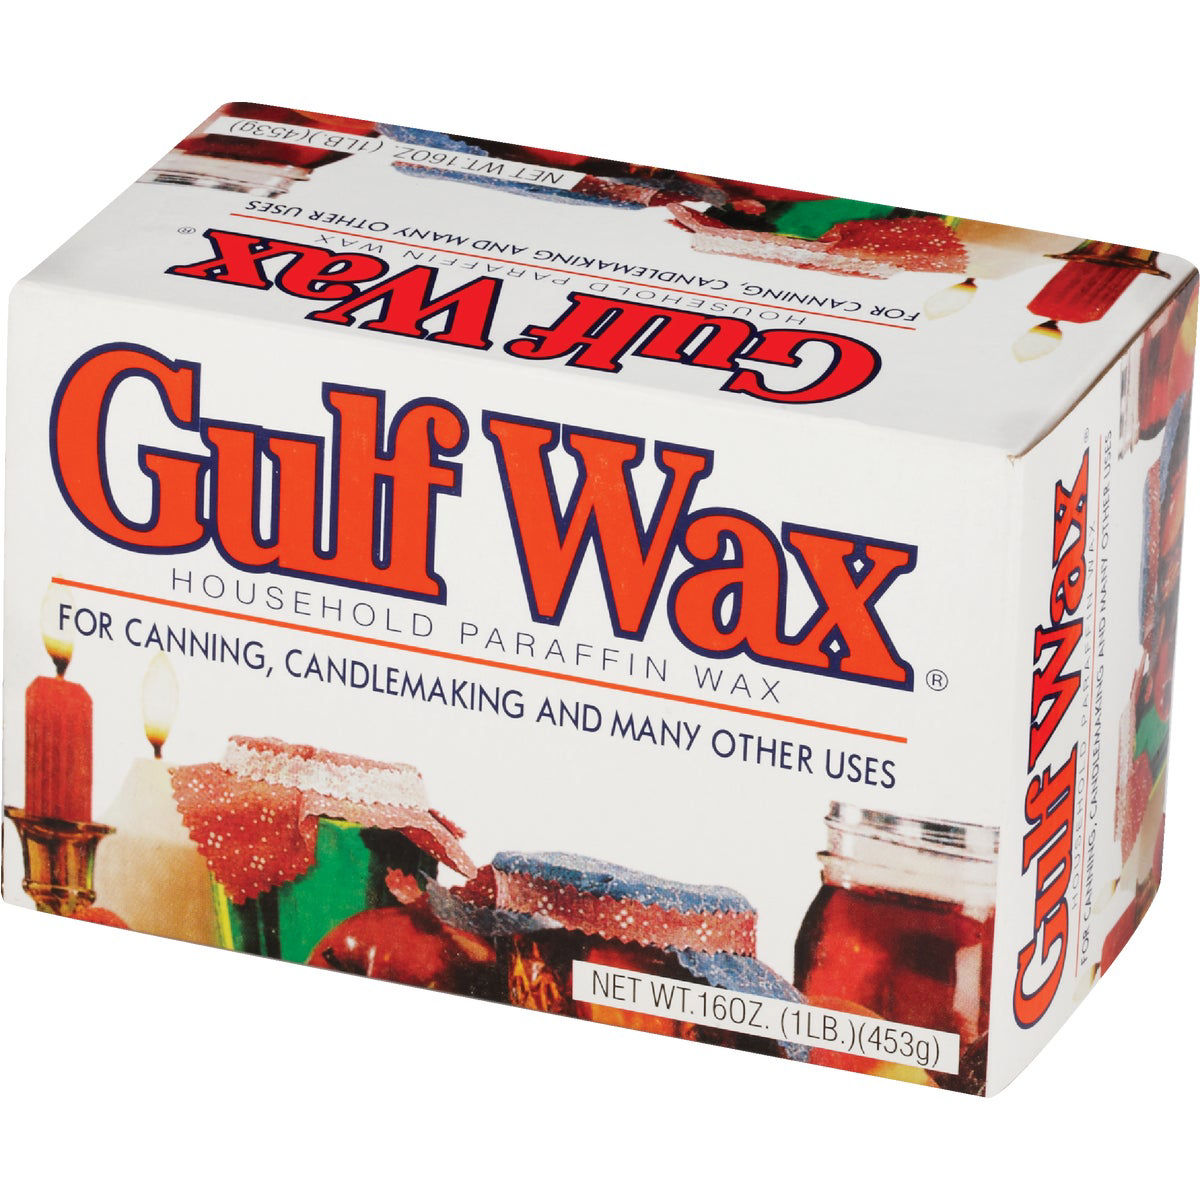 Gulf Wax 16 Oz. Household Paraffin